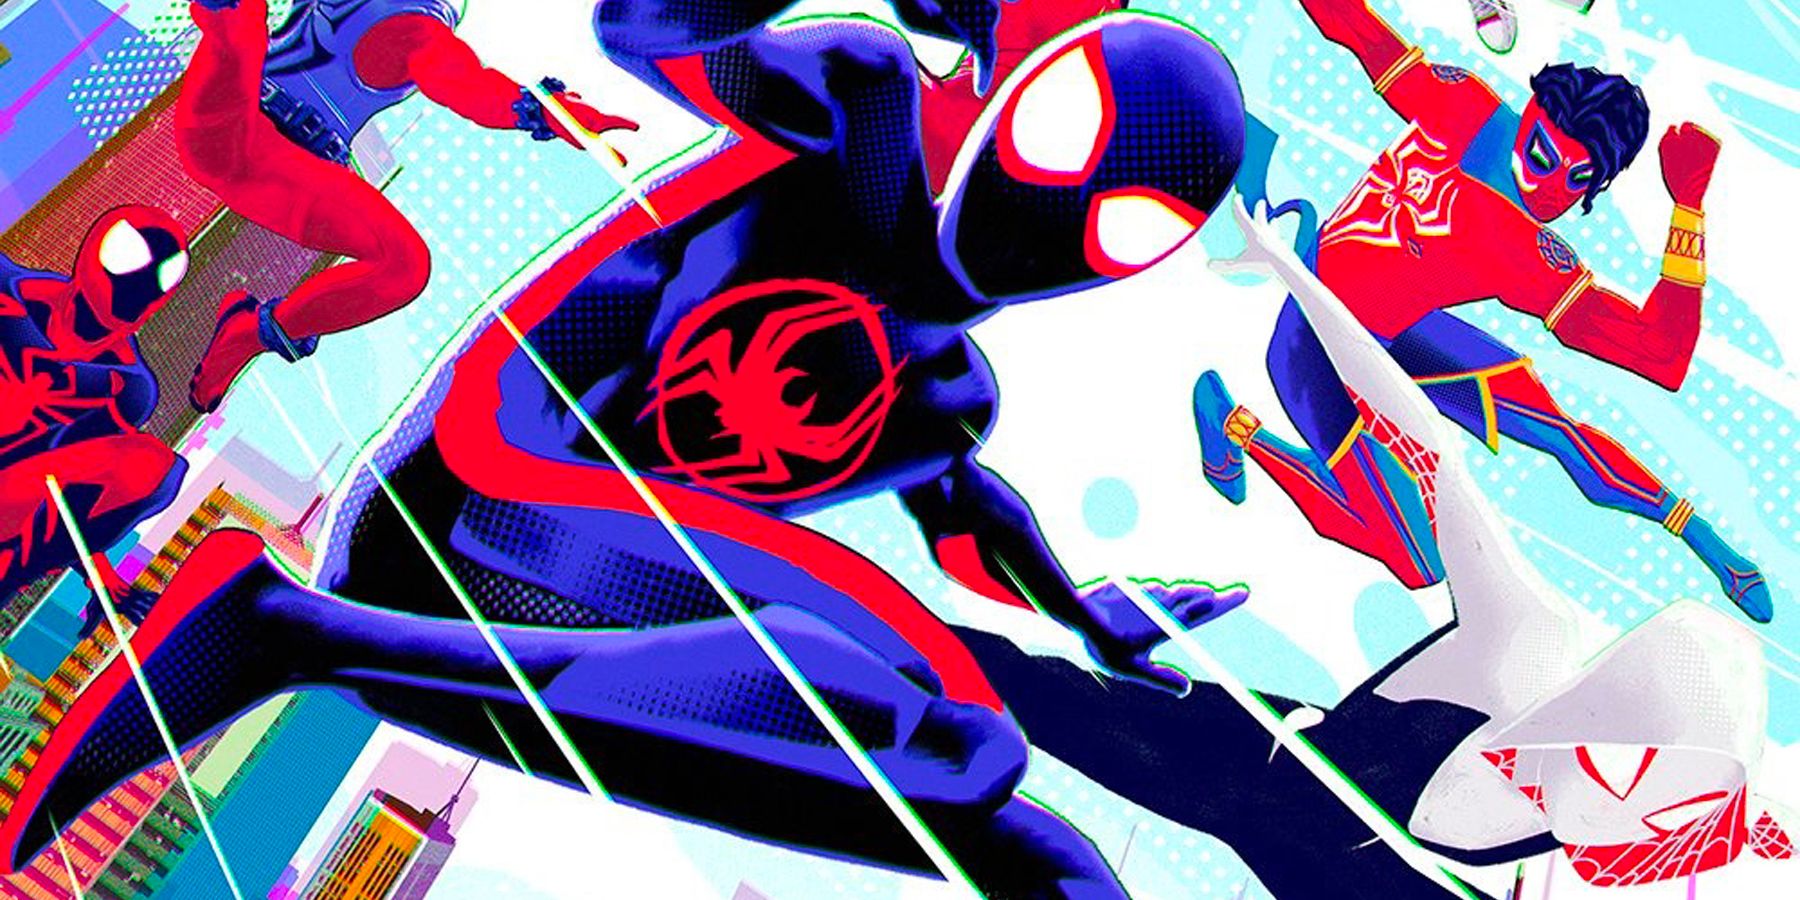 Spider-Man: Beyond the Spider-Verse taken off Sony's release